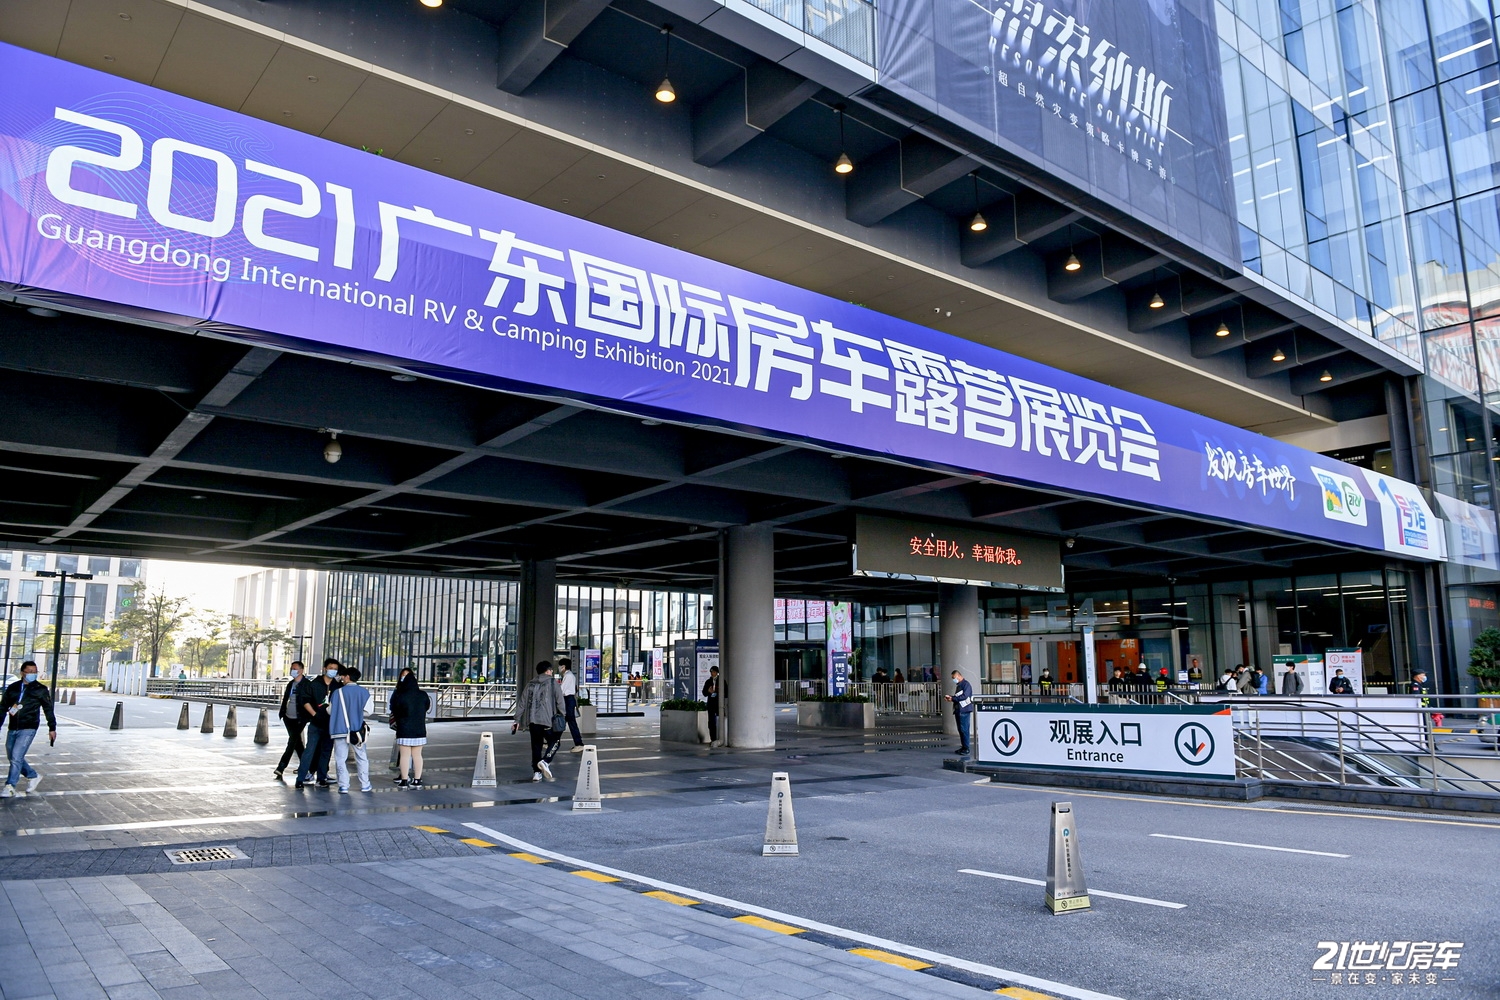 发现房车世界，2021首届广东国际房车露营展览会正式开幕